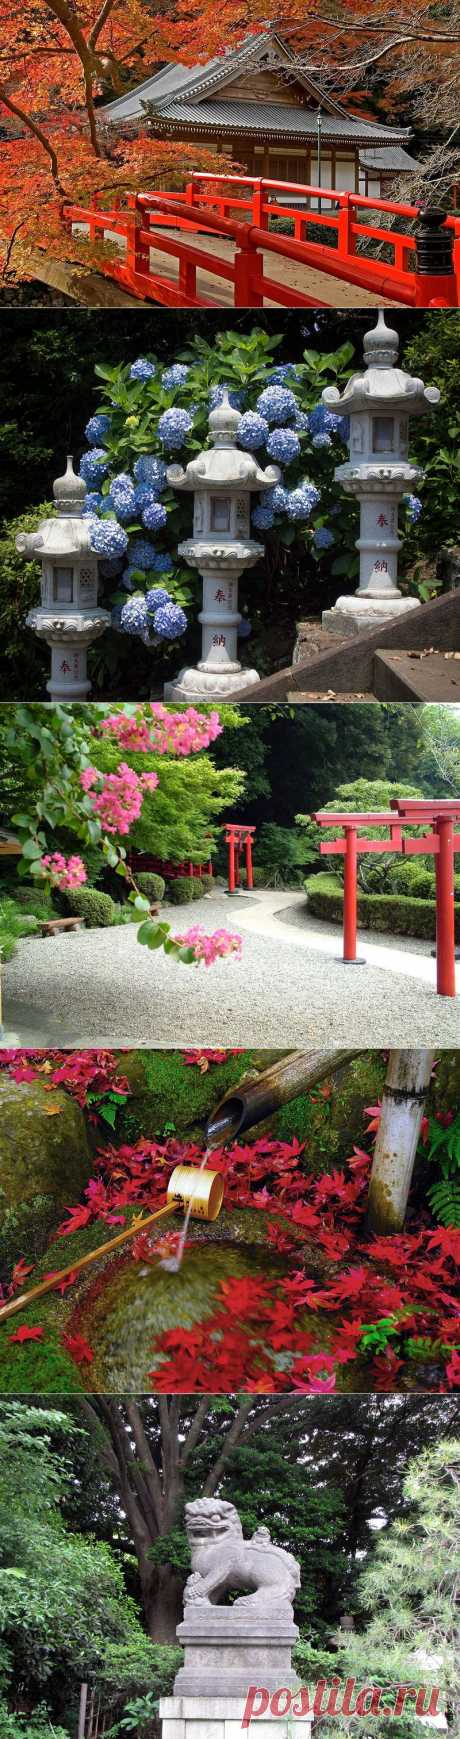 Япония - страна, сочетающая традиции и современность. Часть 3.